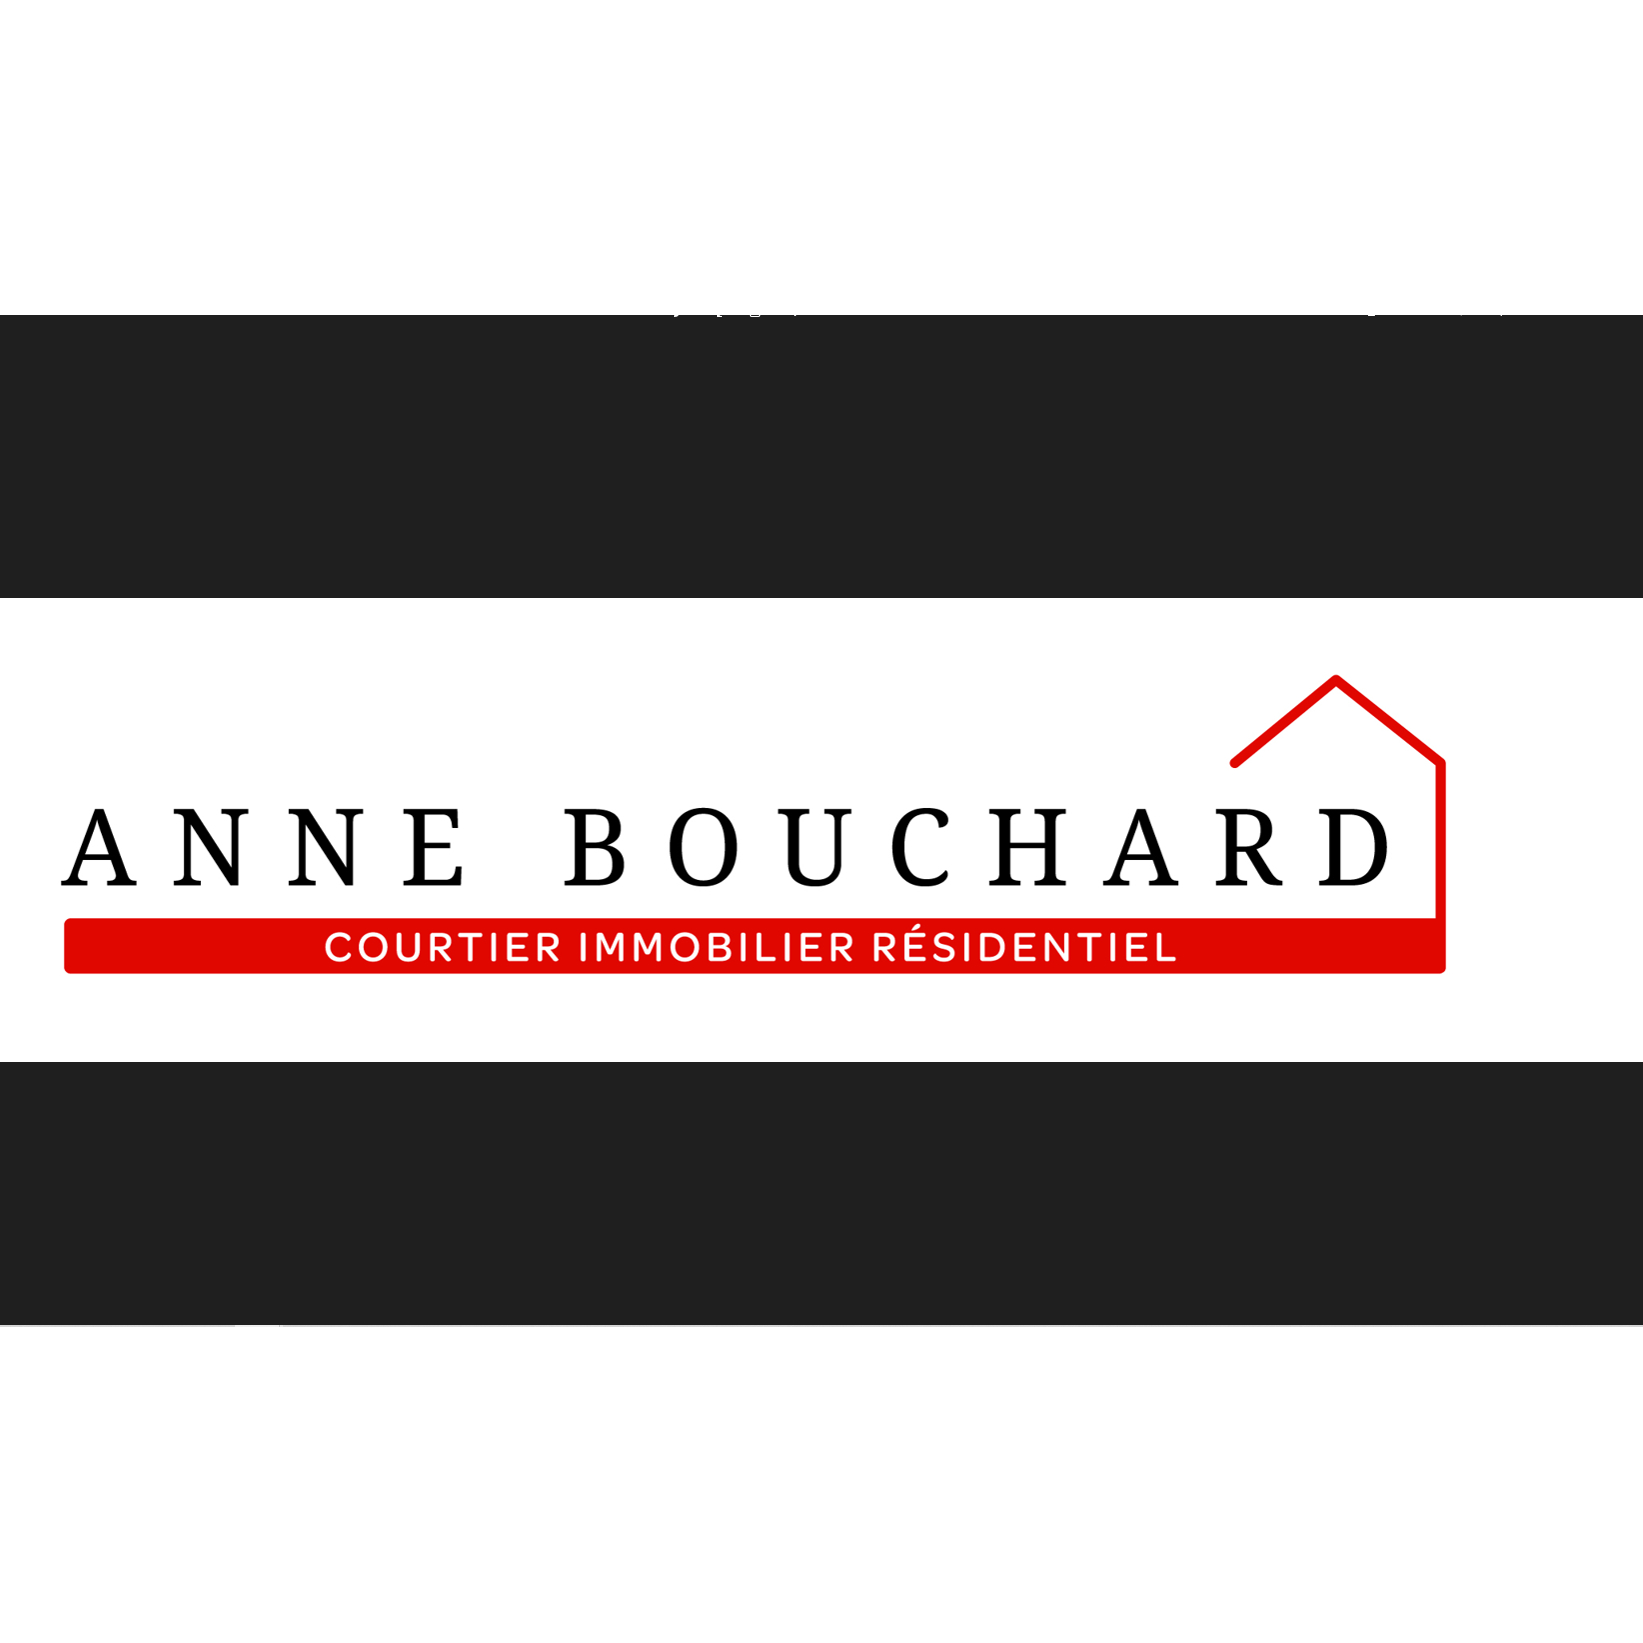 View Anne Bouchard Courtier Immobilier Résidentiel’s Saint-Édouard-de-Lotbinière profile